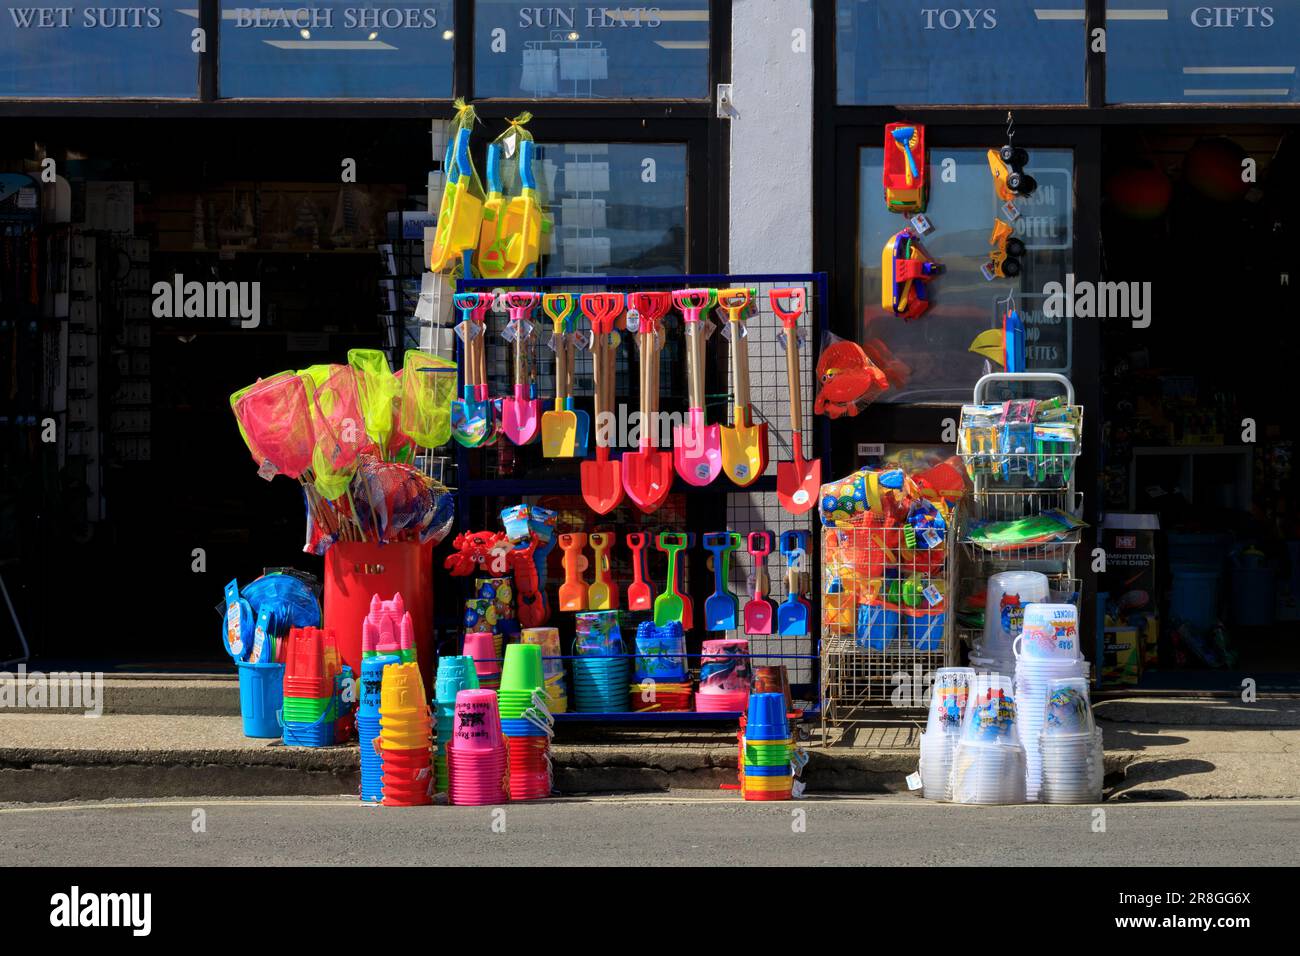 Ein Laden, der farbenfrohe Strandartikel verkauft - Eimer, Pik, Bälle usw. im Lyme Regis an der Jurassic Coast, Dorset, England, Großbritannien Stockfoto